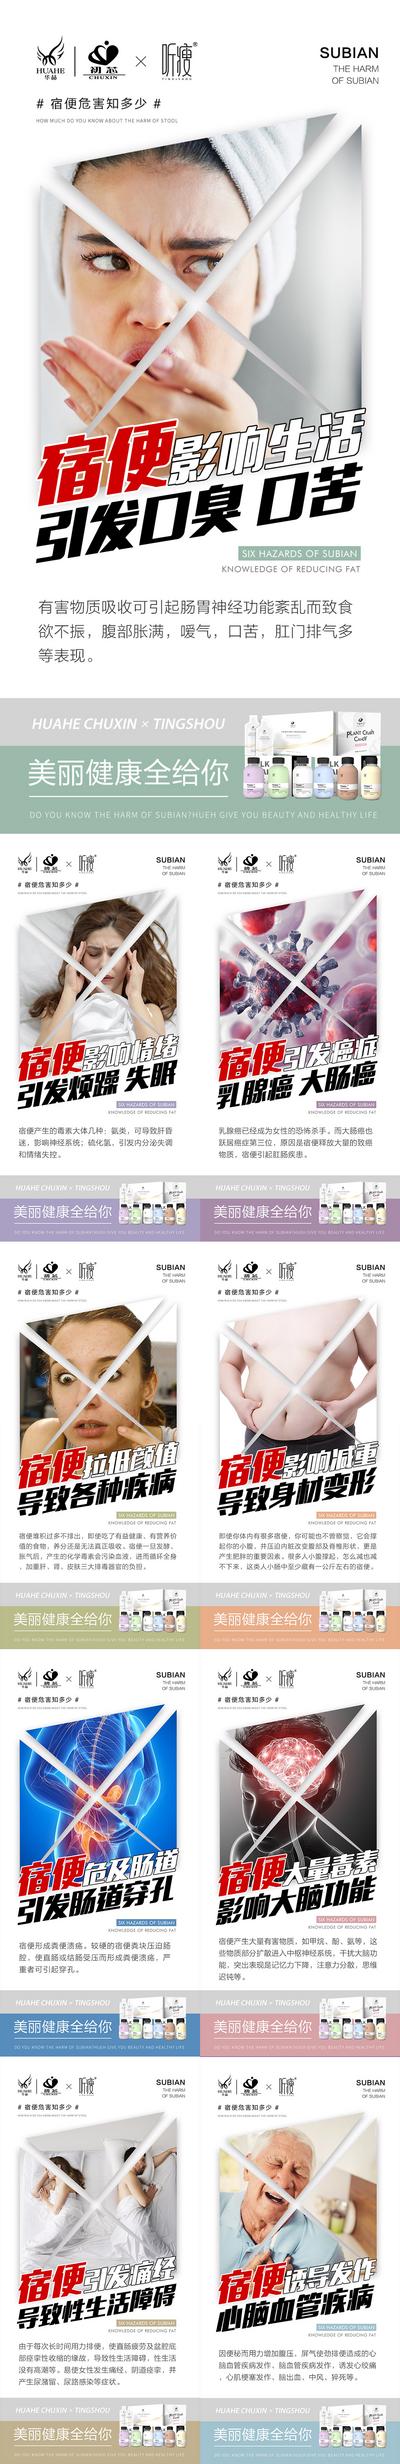 【南门网】广告 海报 医美 口臭 痛点 宿便 肠道 系列 产品